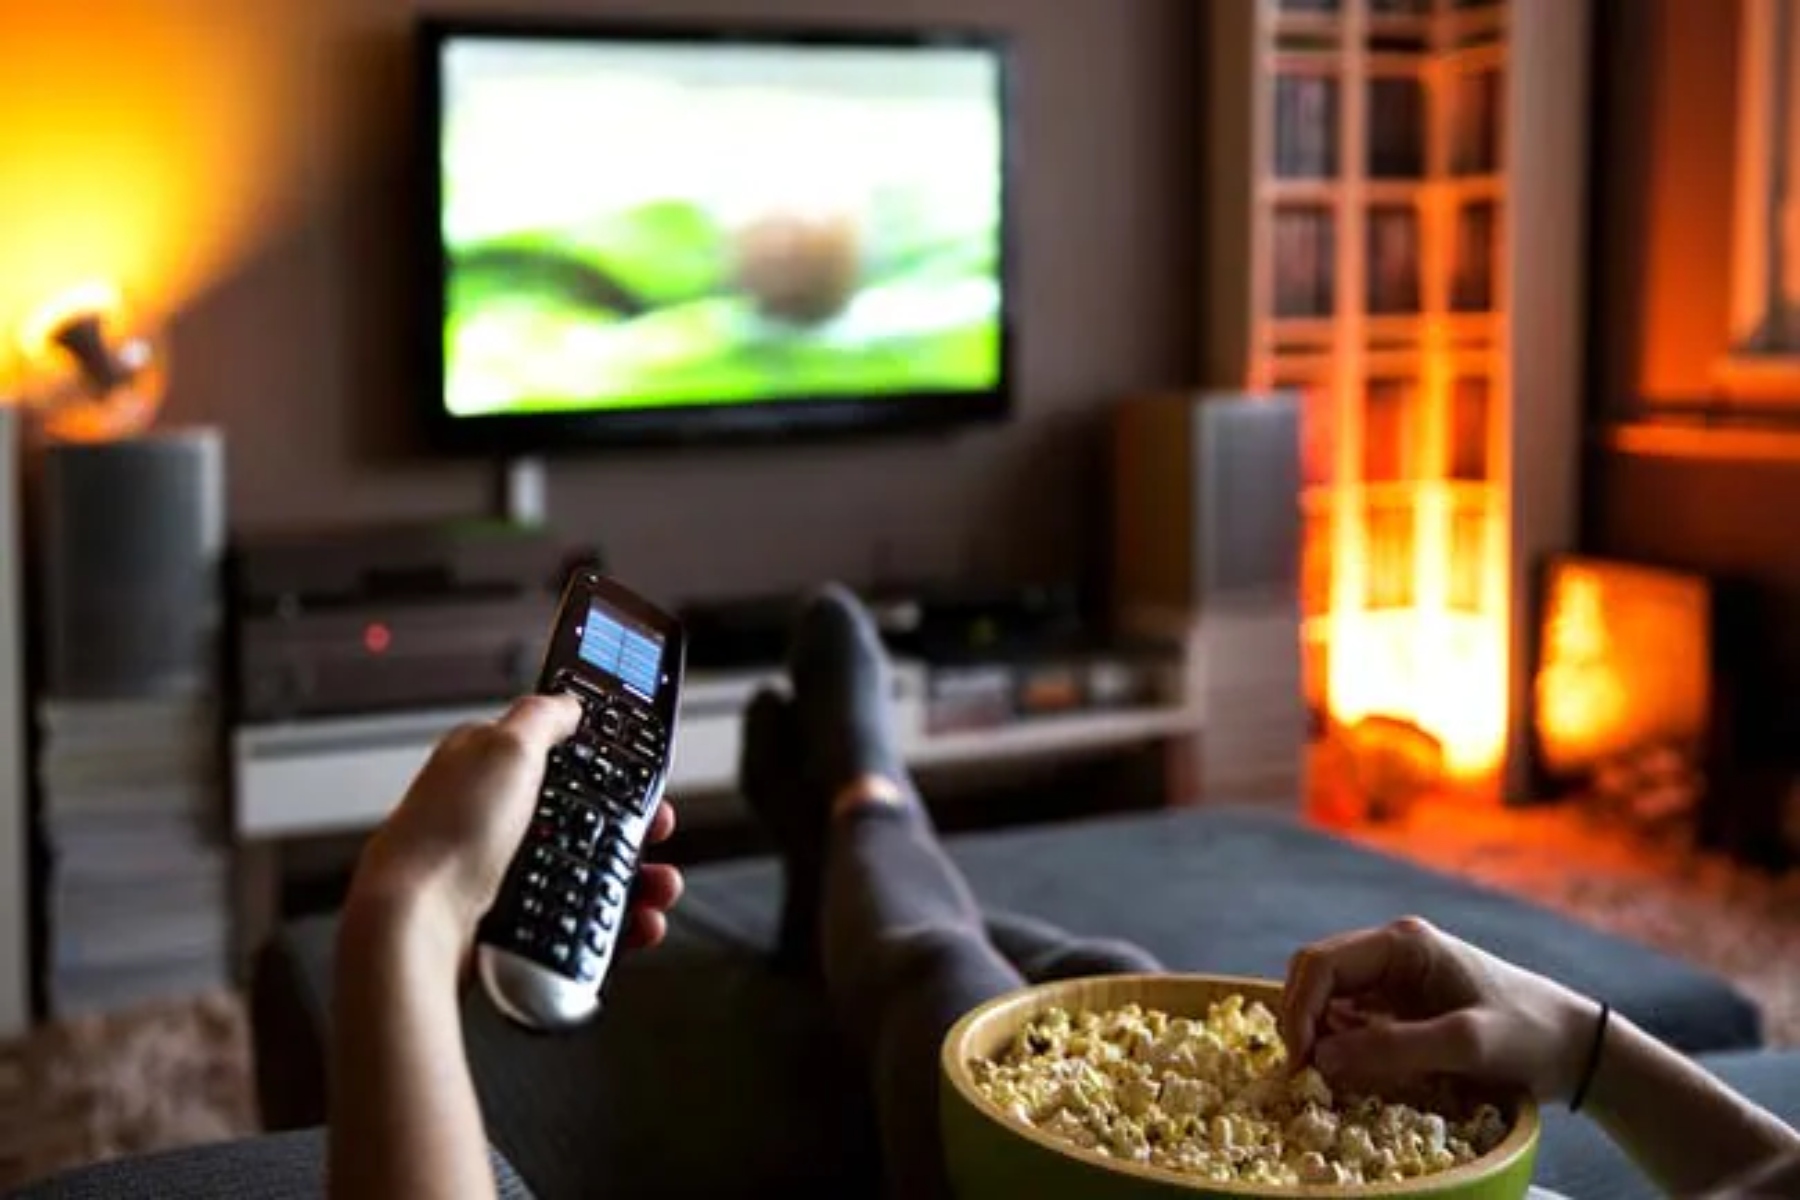 Κατάθλιψη: Η παρακολούθηση τηλεόρασης για πολλές ώρες αυξάνει τον κίνδυνο